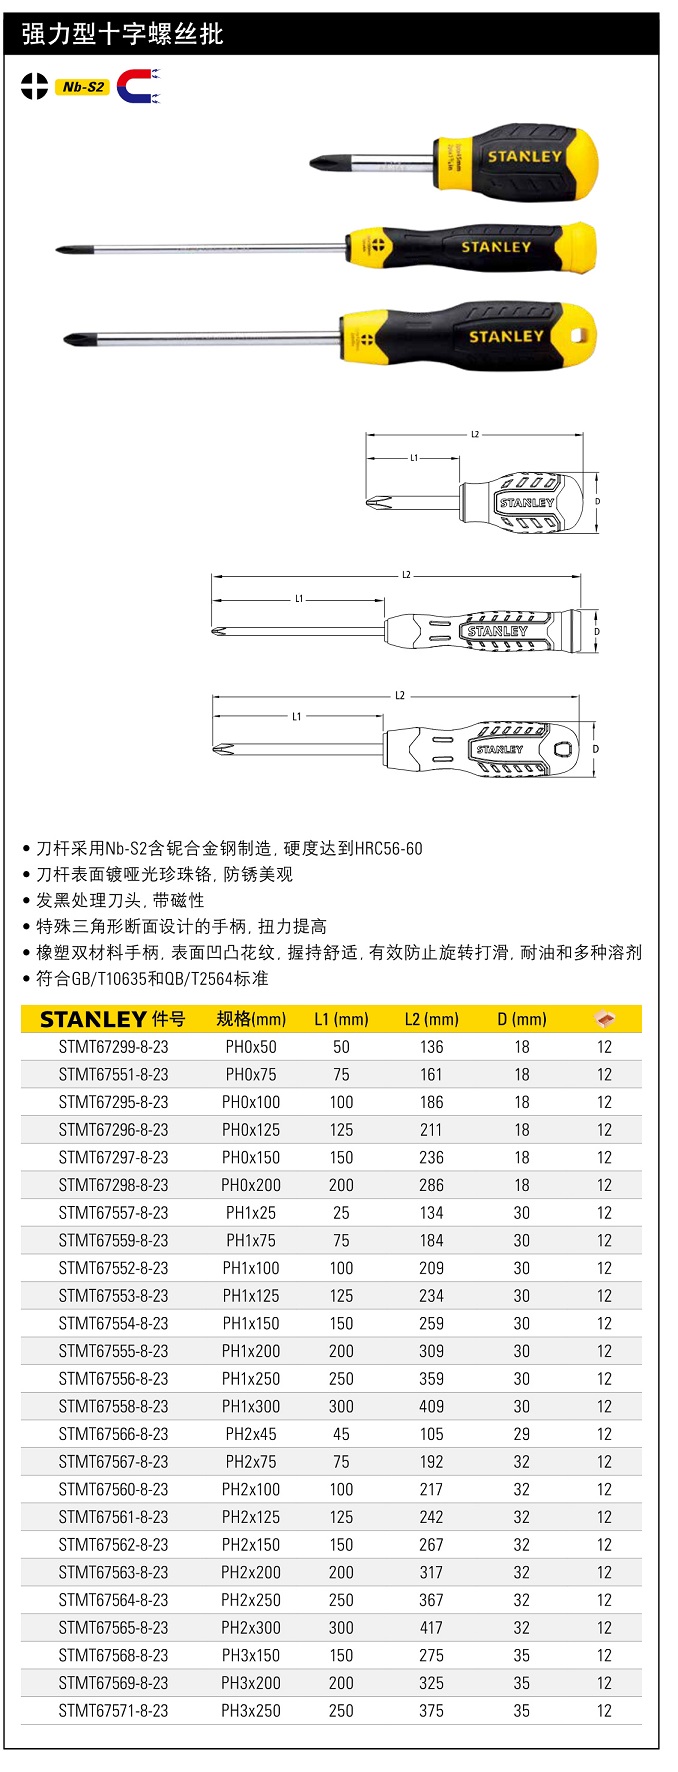 史丹利强力型十字螺丝批PH1 125mm.jpg